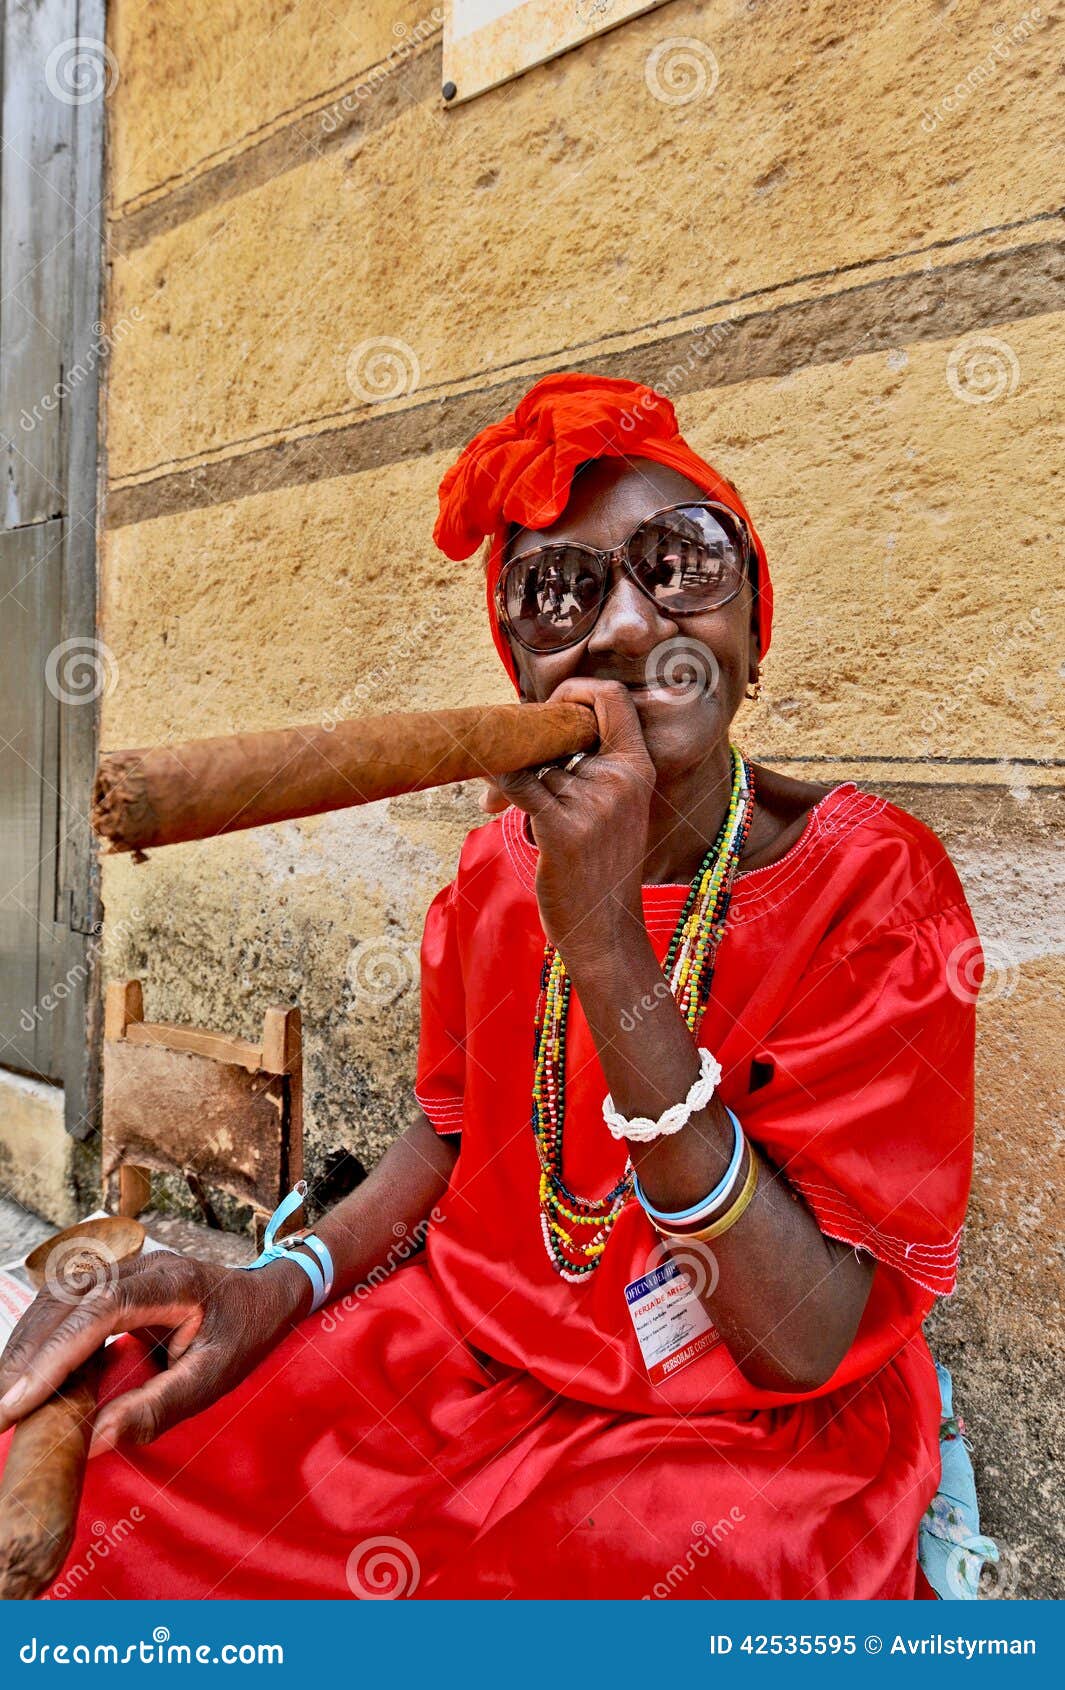 amar bhowmik add old lady smoking cigar photo